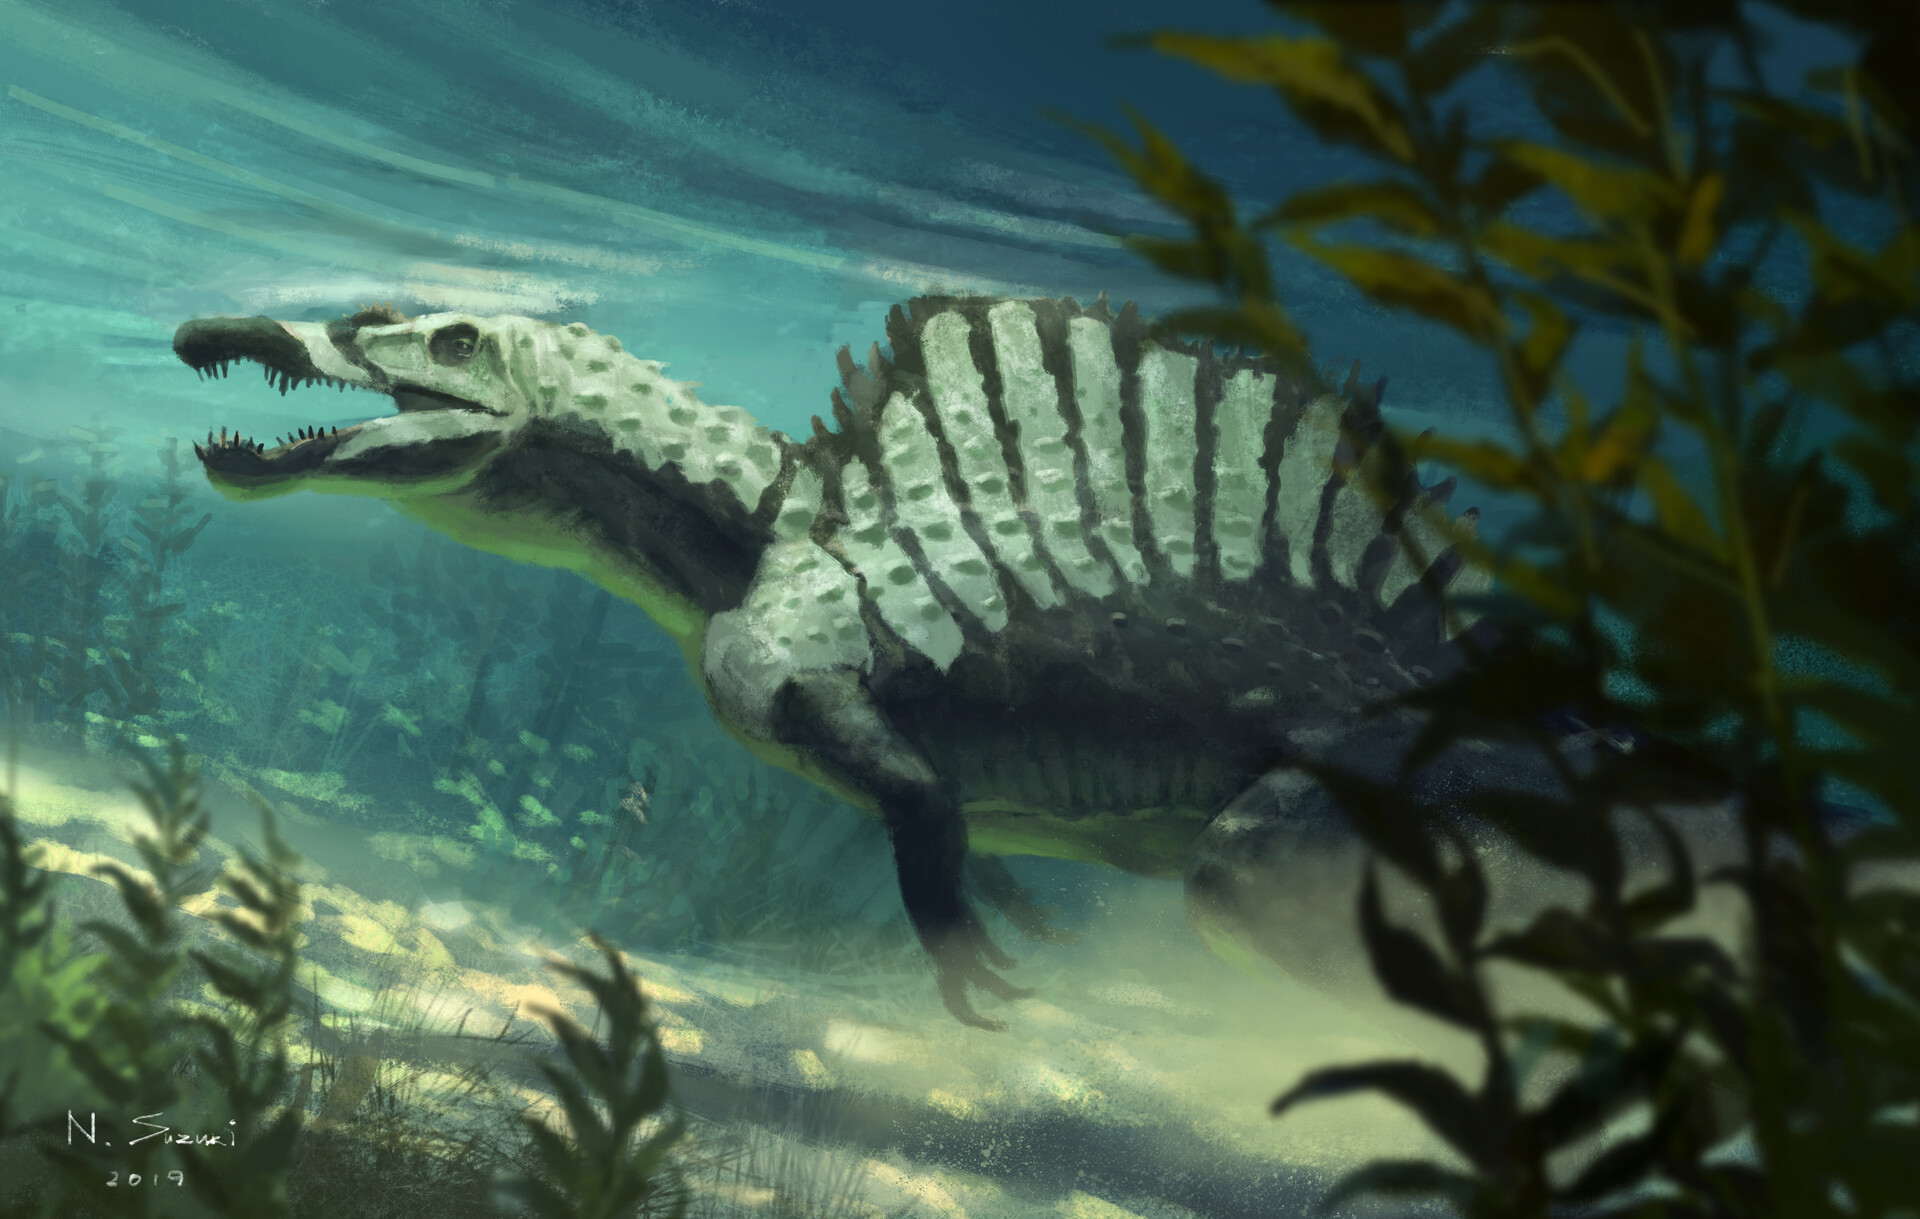 Spinosaurus underwater.